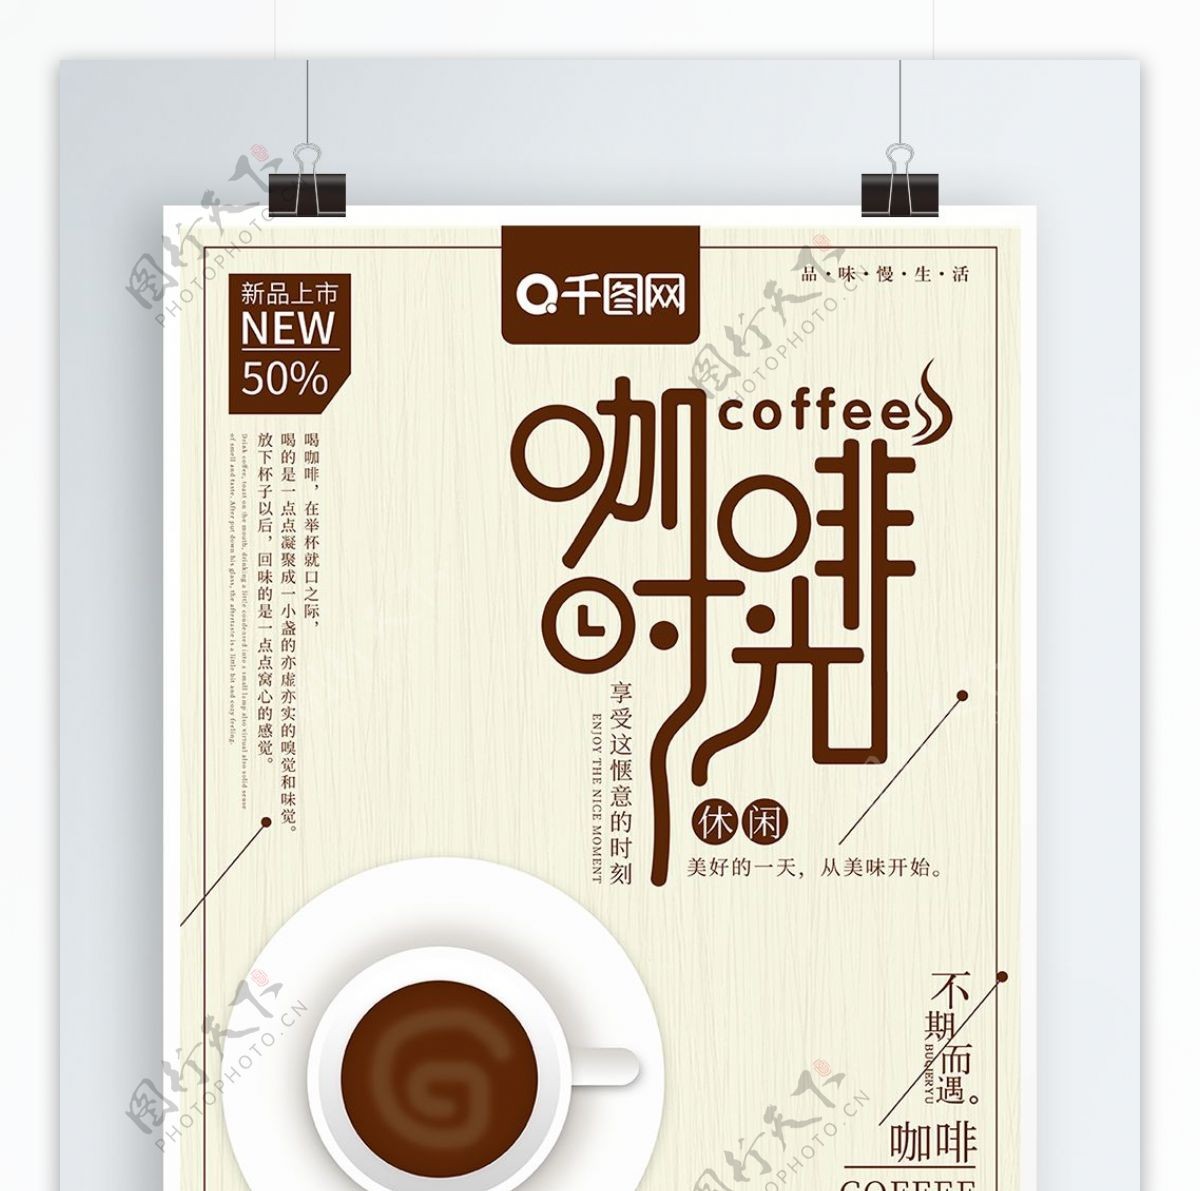 原创简约咖啡时光咖啡美食海报